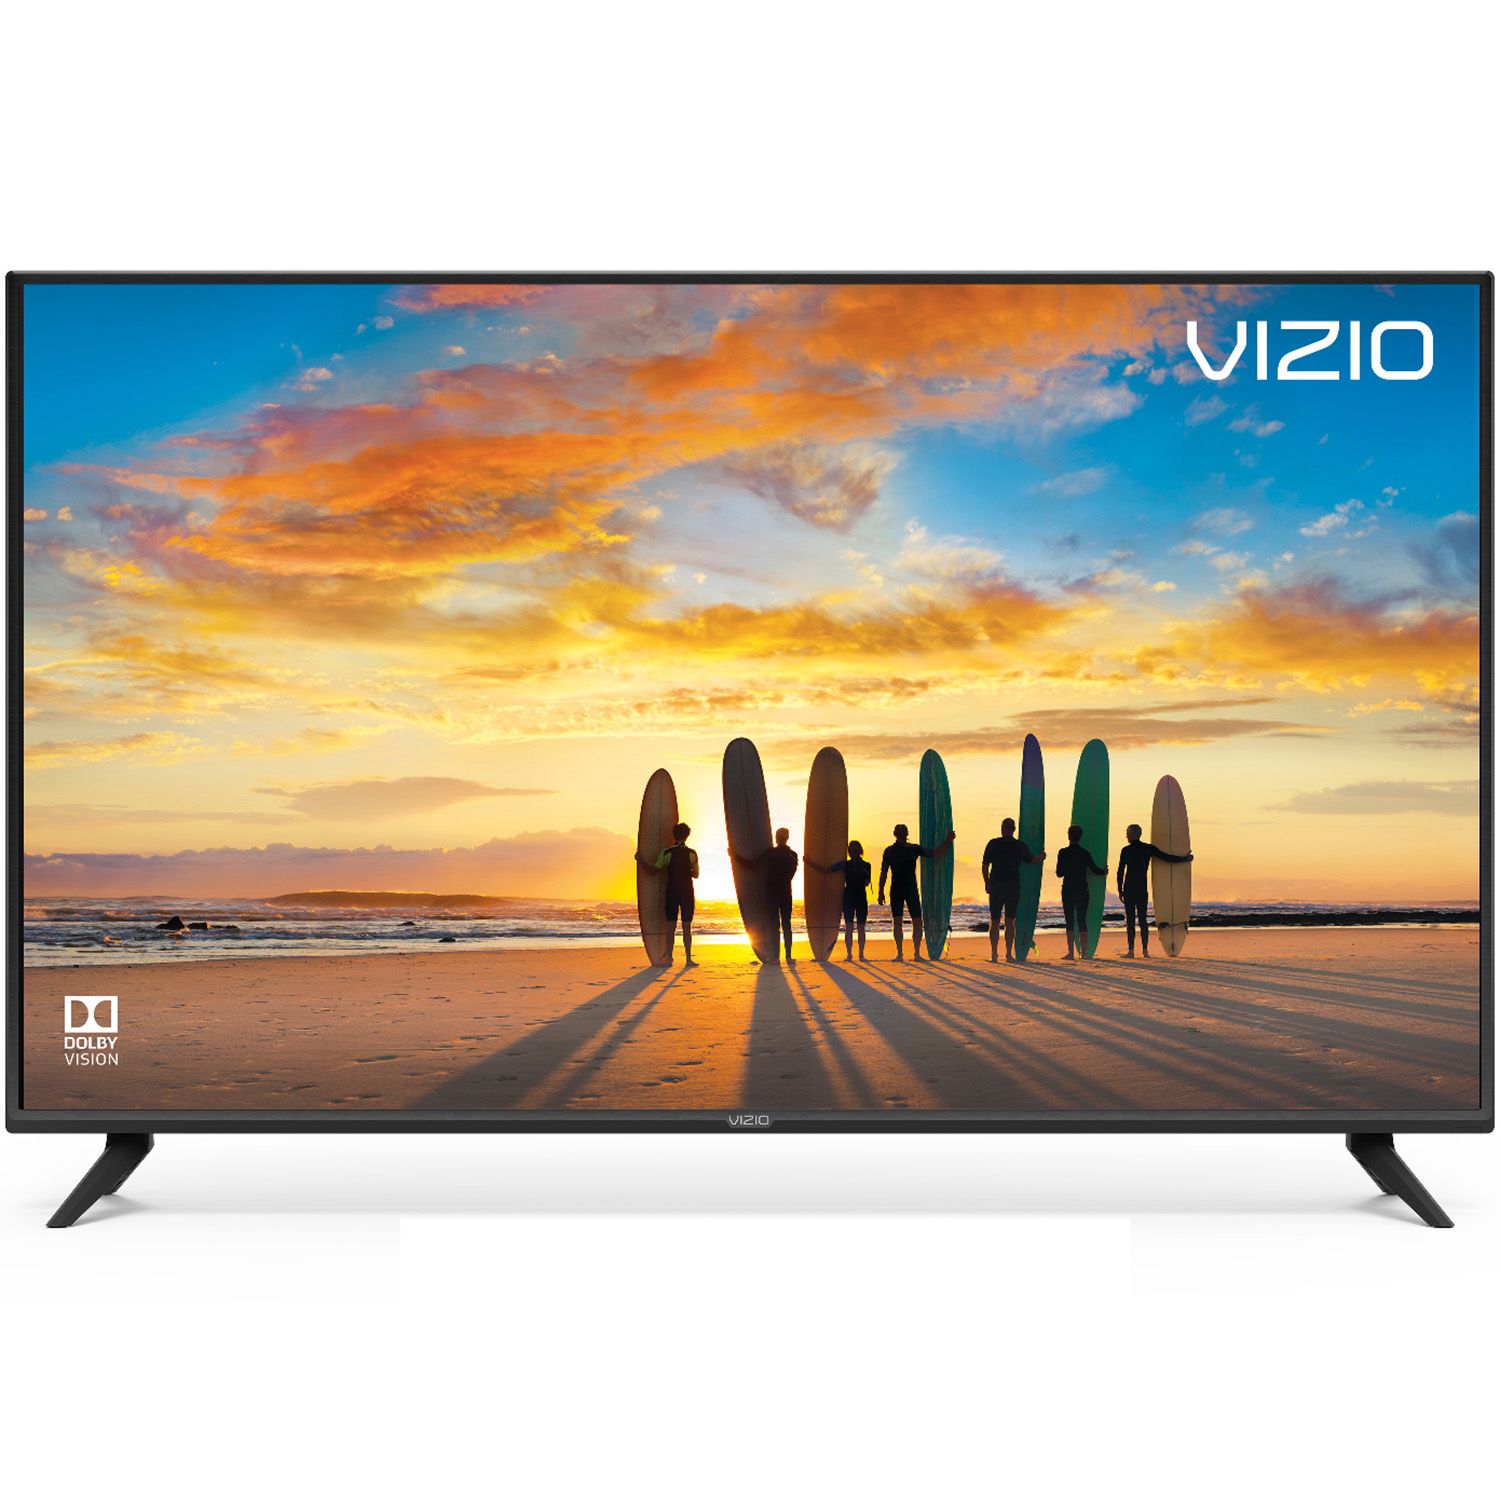 VIZIO V505-G9 V-Series 50” 4K HDR Smart TV